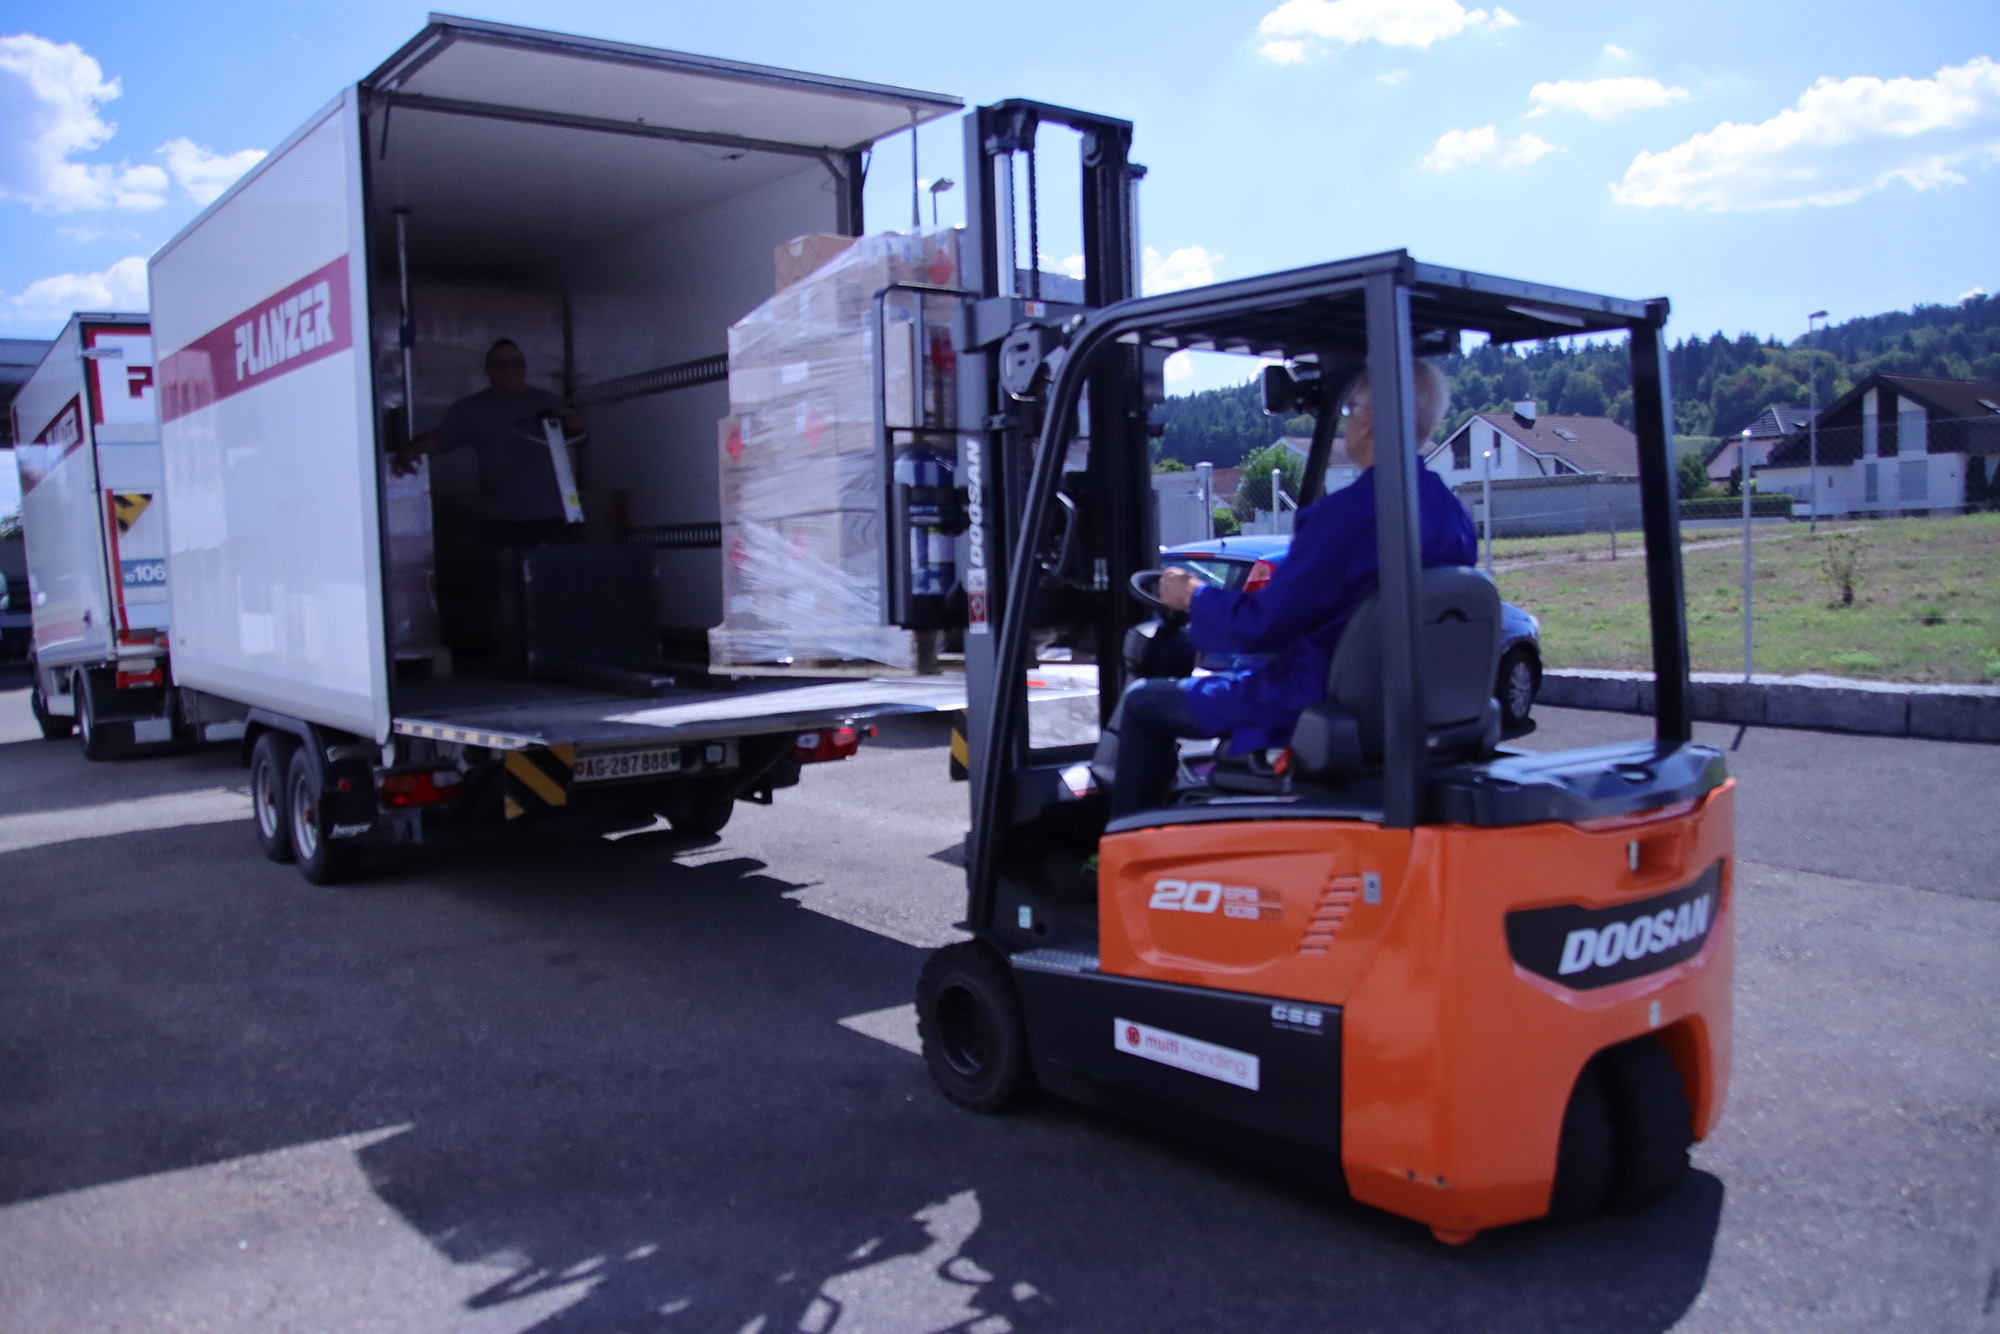 Auf dem Bild ist ein grosser Doosan-Stapler erkennbar in orange, welcher abgepackte Chemischen Produkten in einen Planzer-Lastwagen verfrachtet.